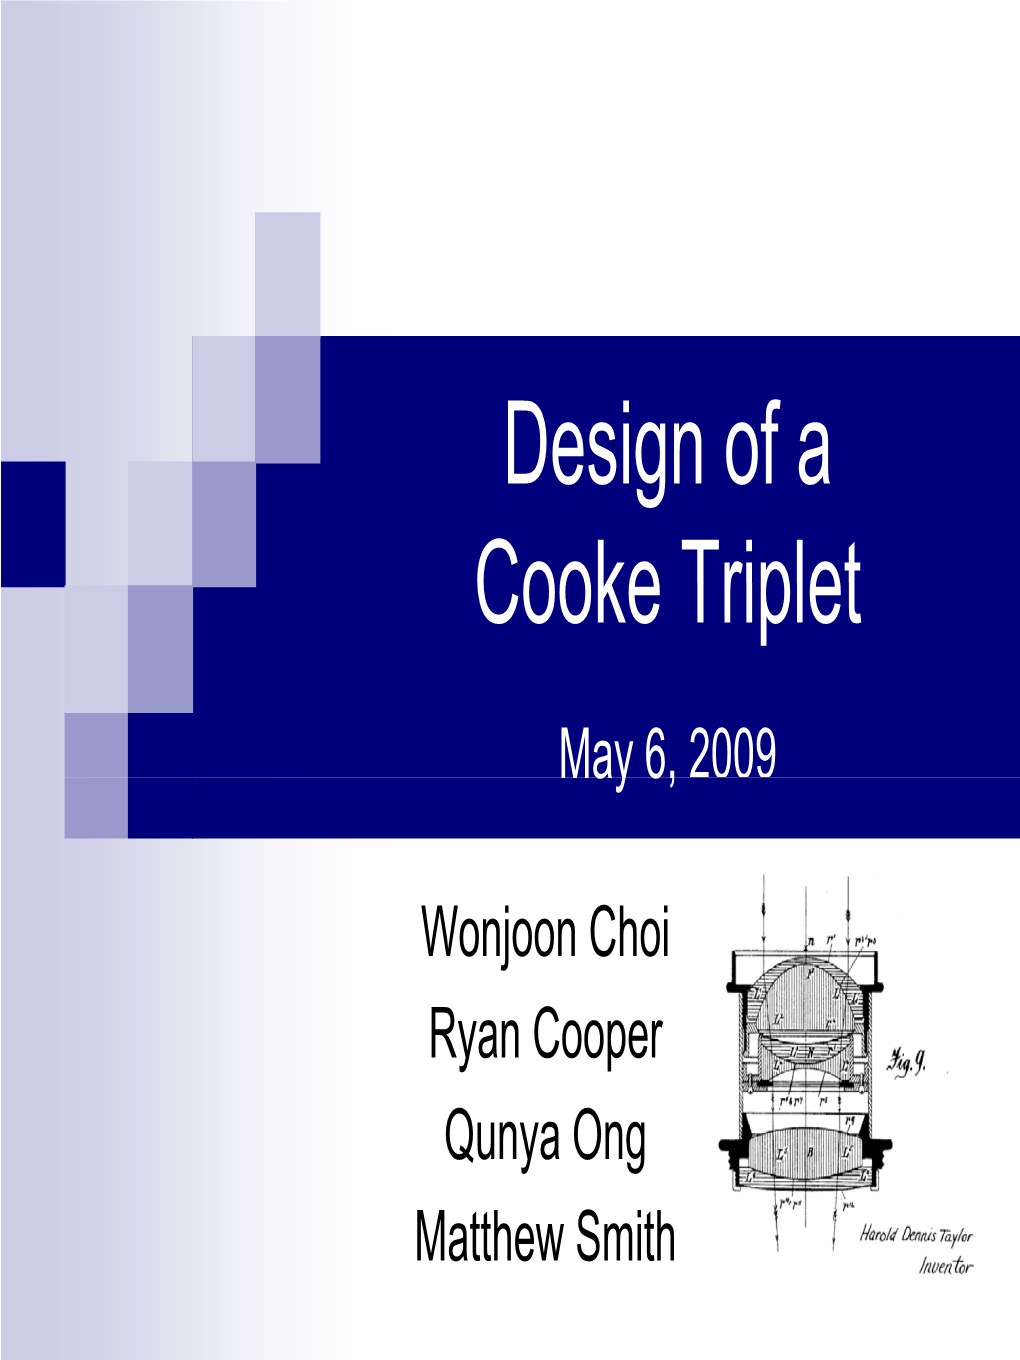 Design of a Cooke Triplet